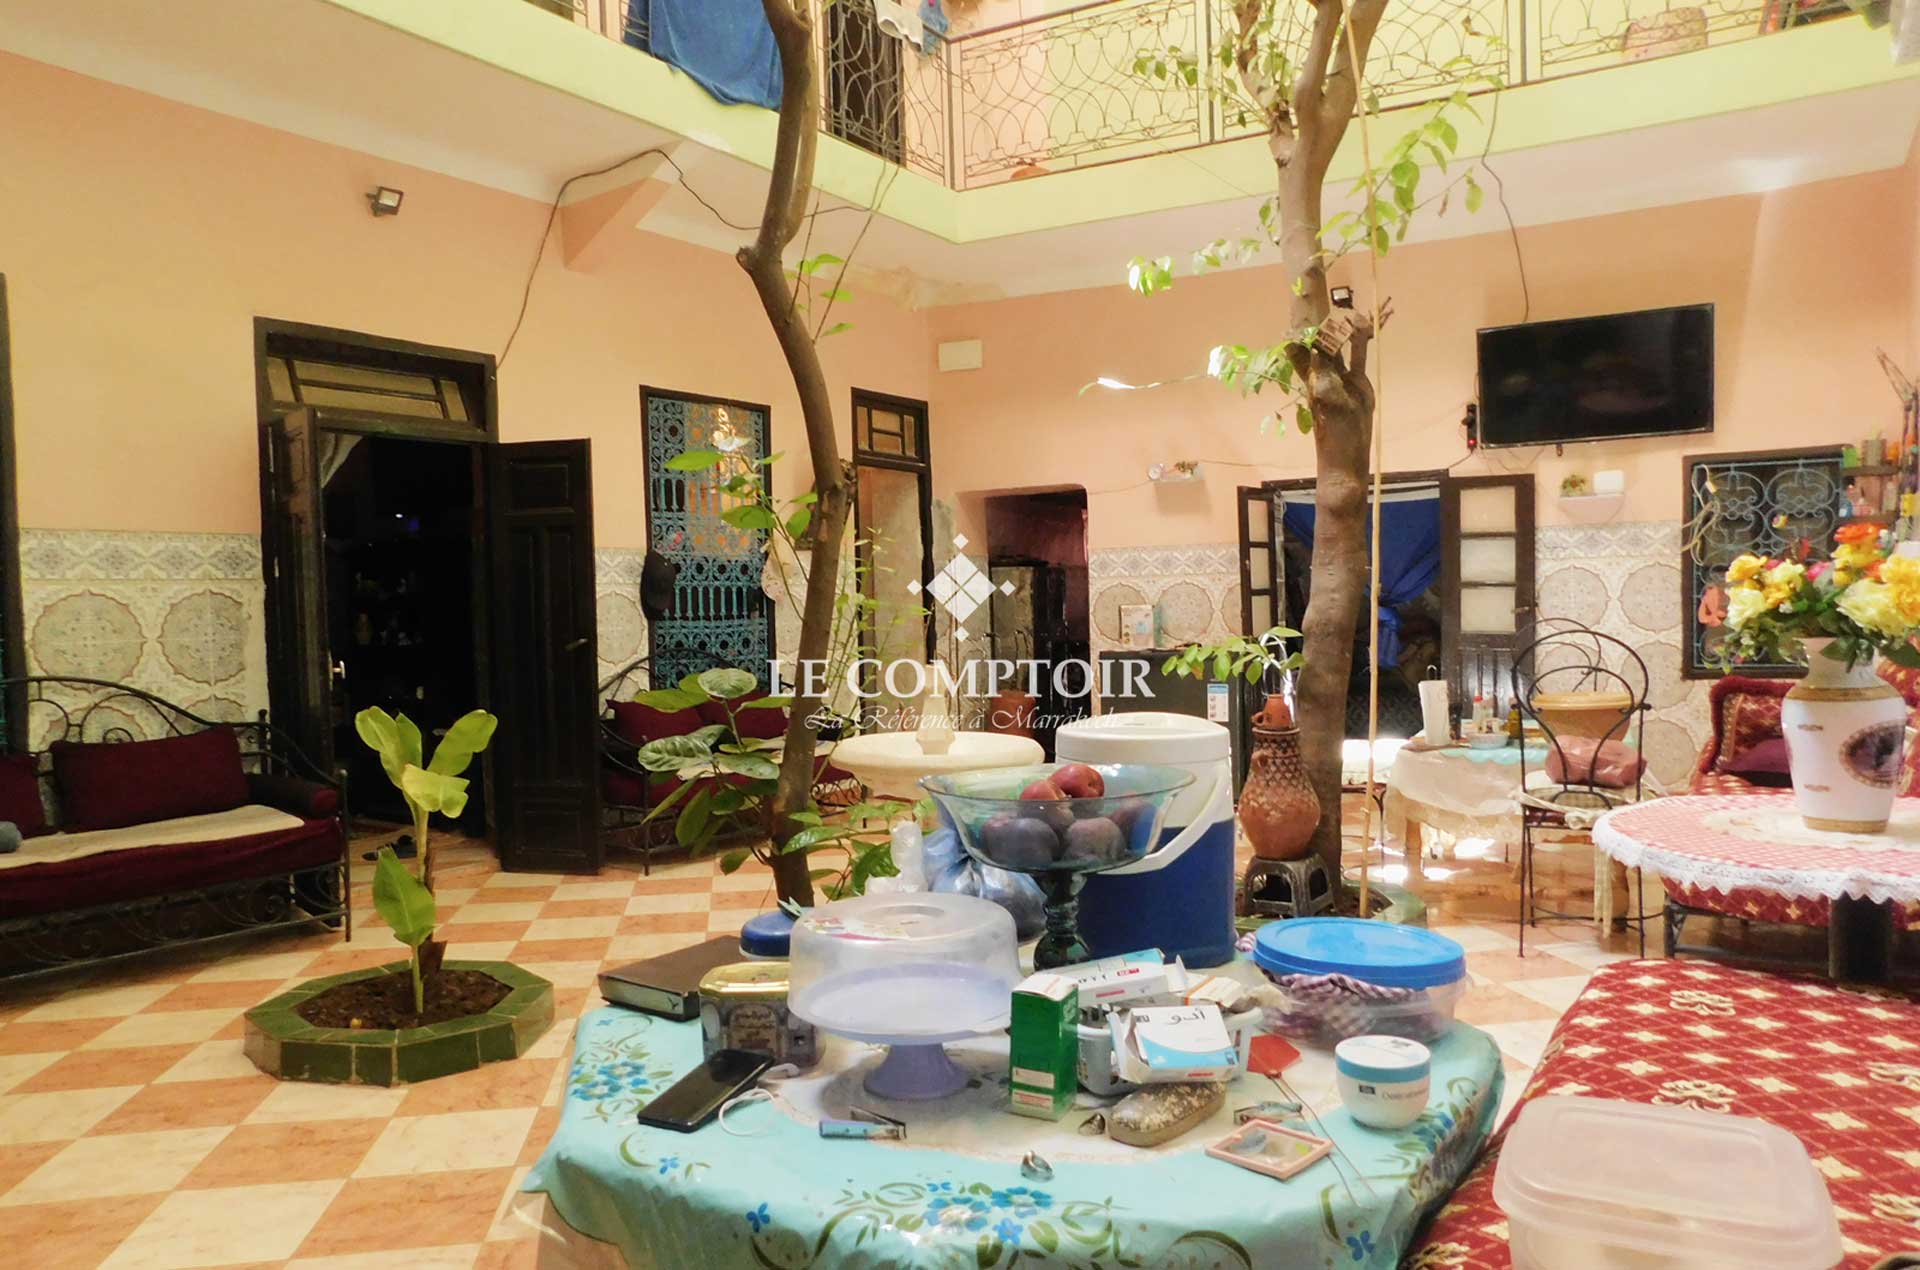 Le Comptoir Immobilier Agence Immobiliere Marrakech Vente Riad A Renover Derb Dabachi Medina Marrakech 2